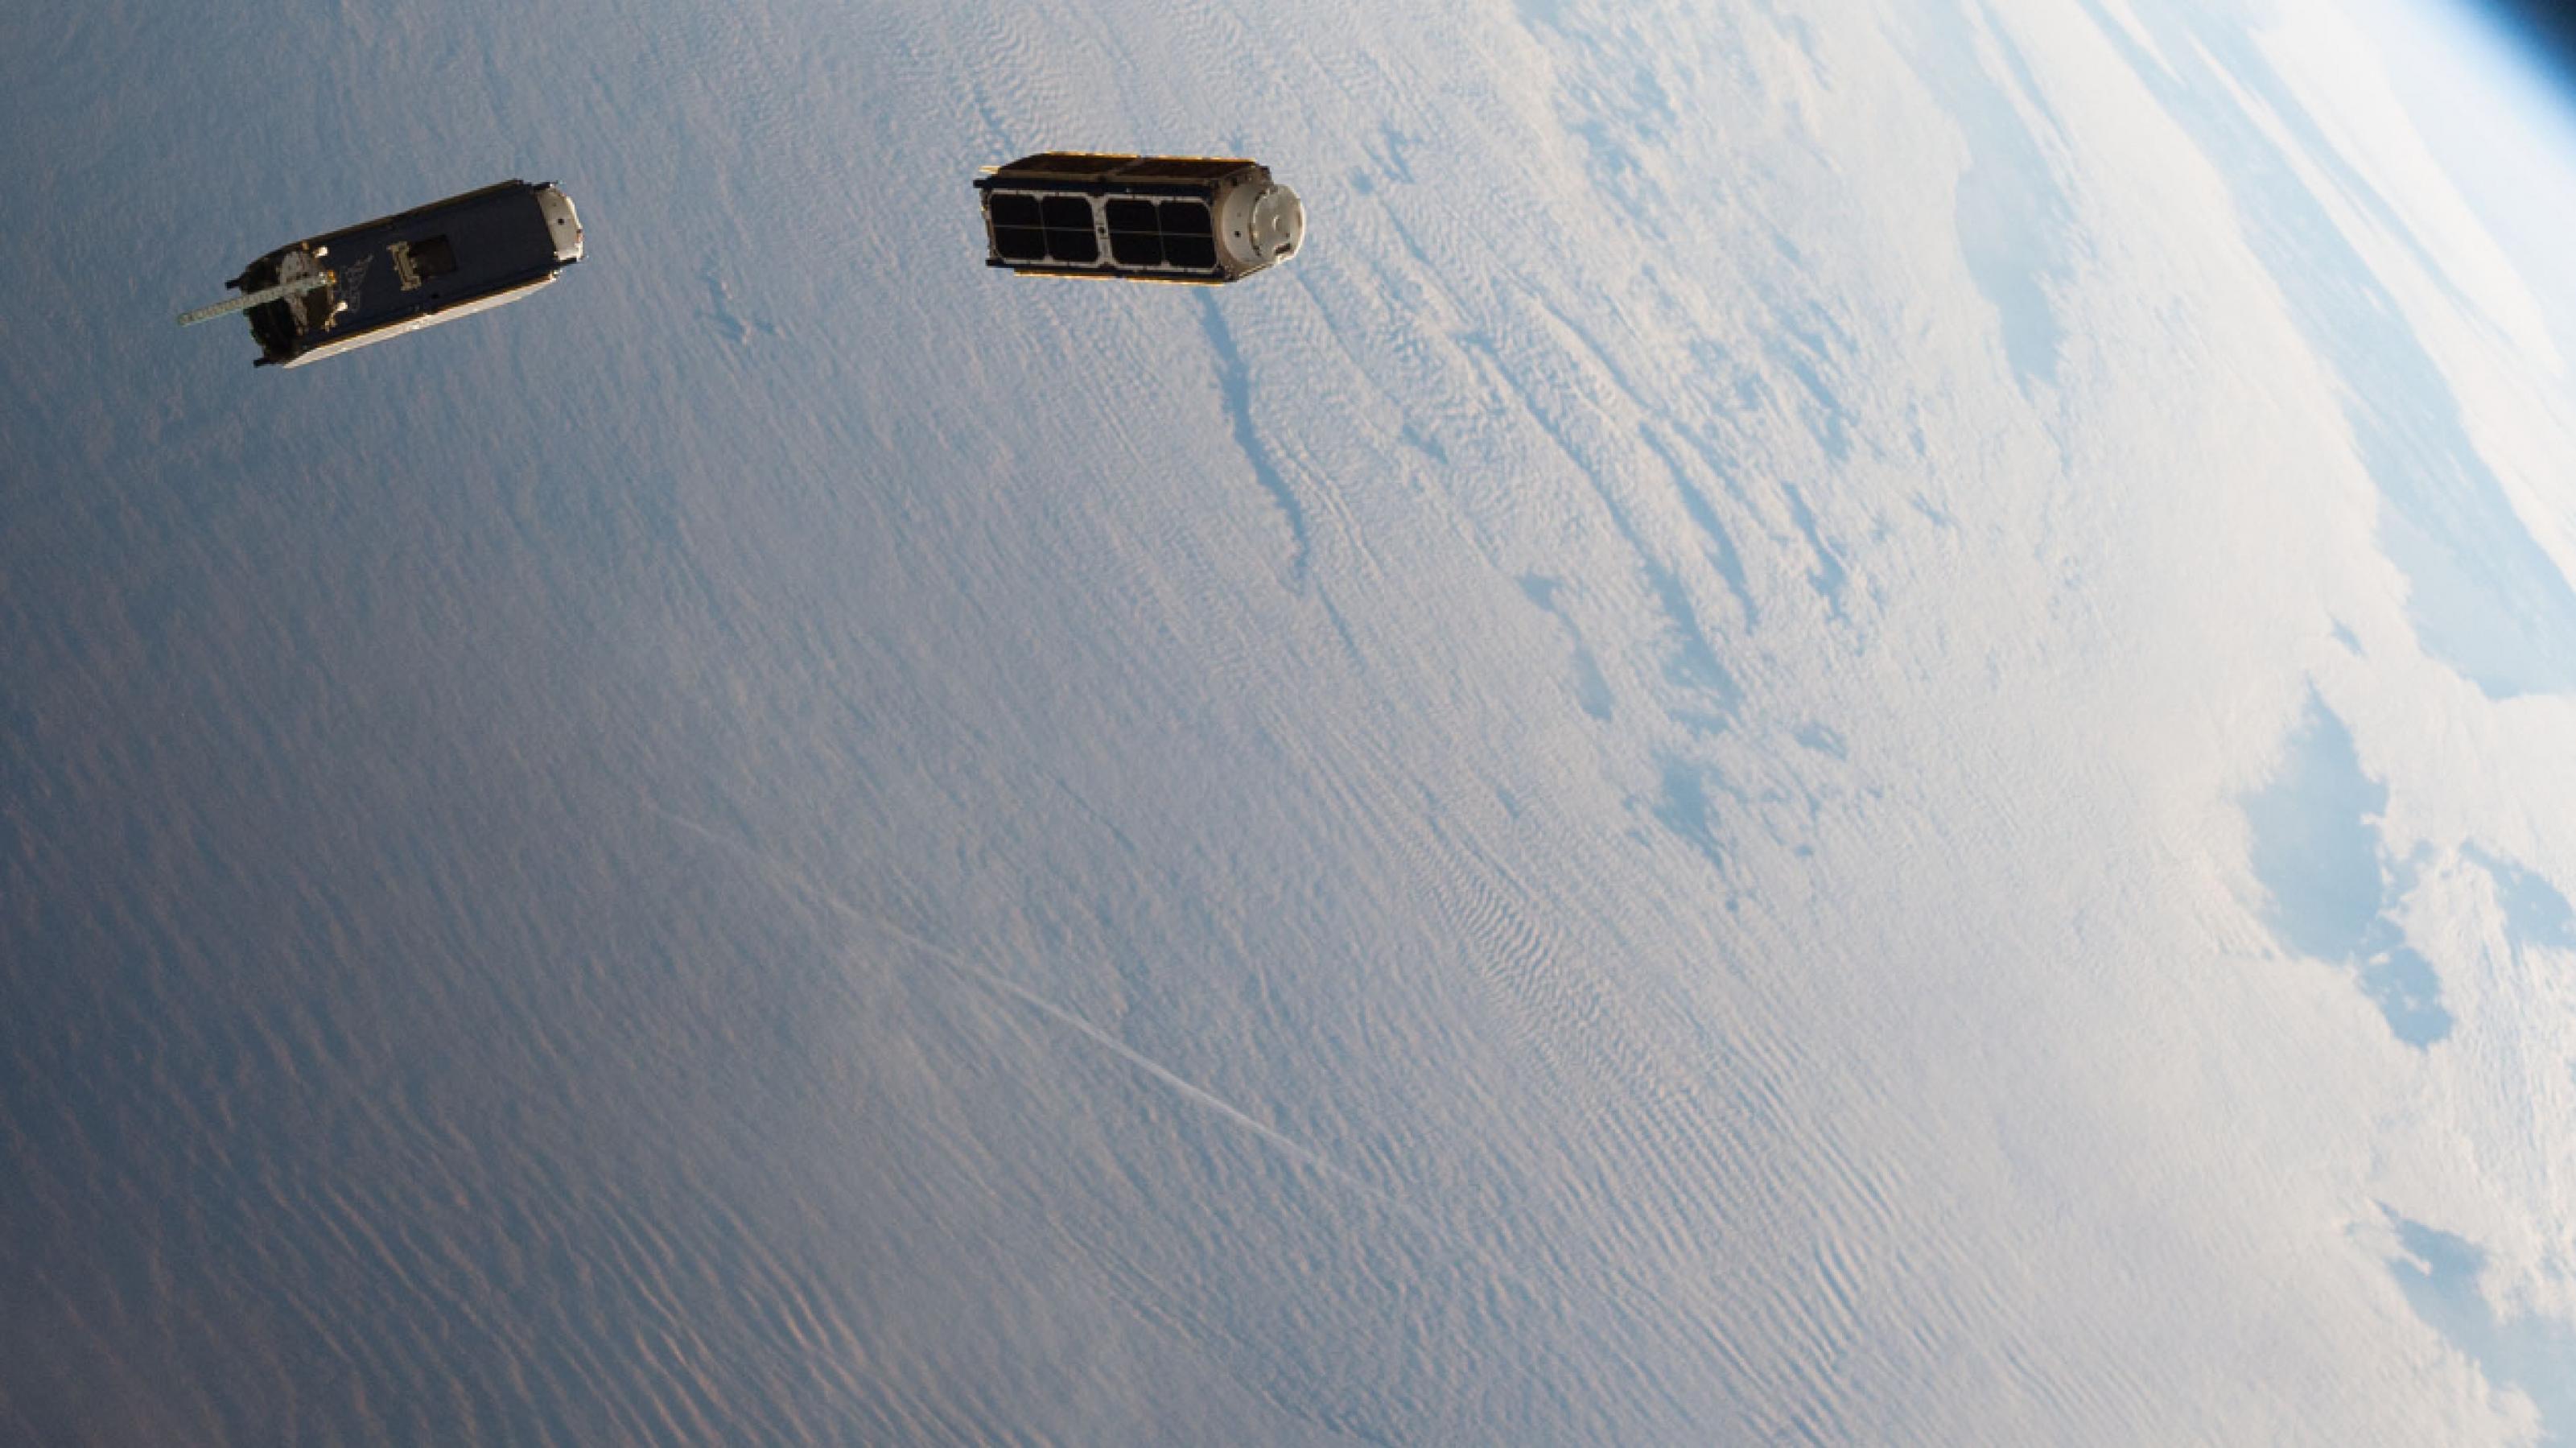 Zwei wie Schuhkartons geformte Satelliten driften um die blaue Erde